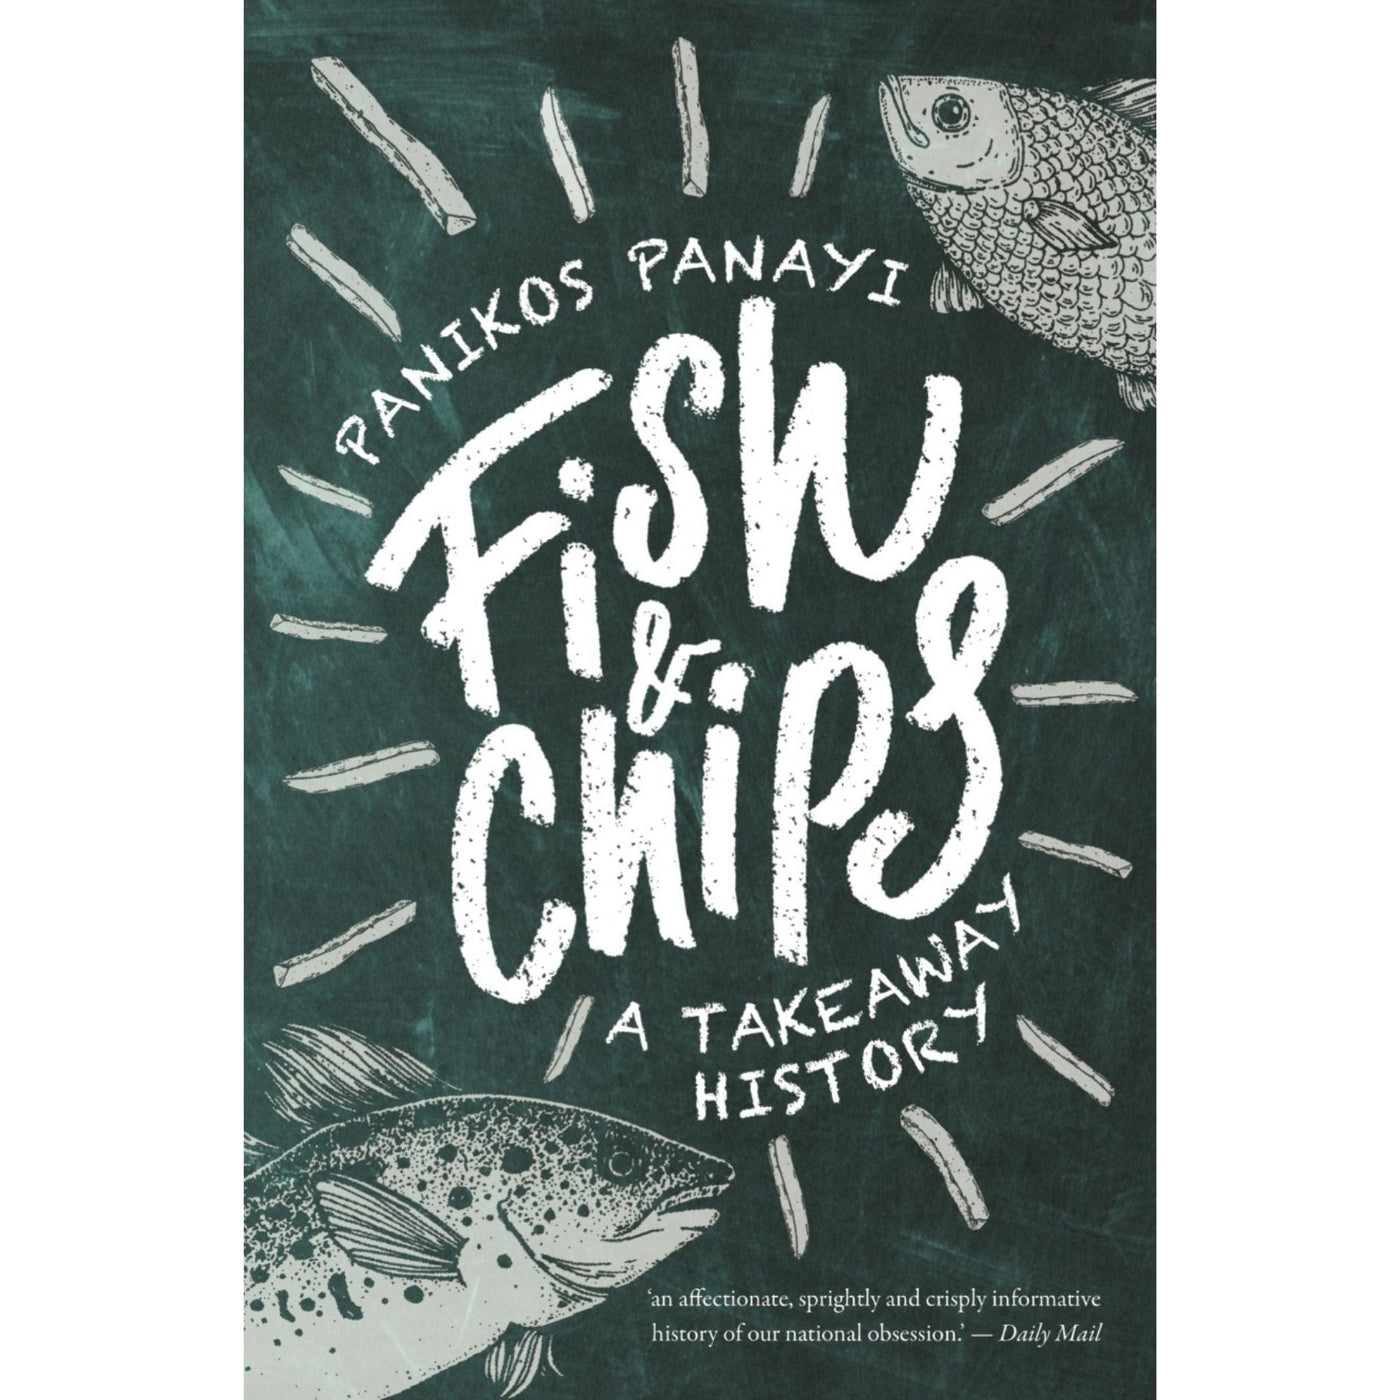 Panikos Panayi: Fish and Chips - A History